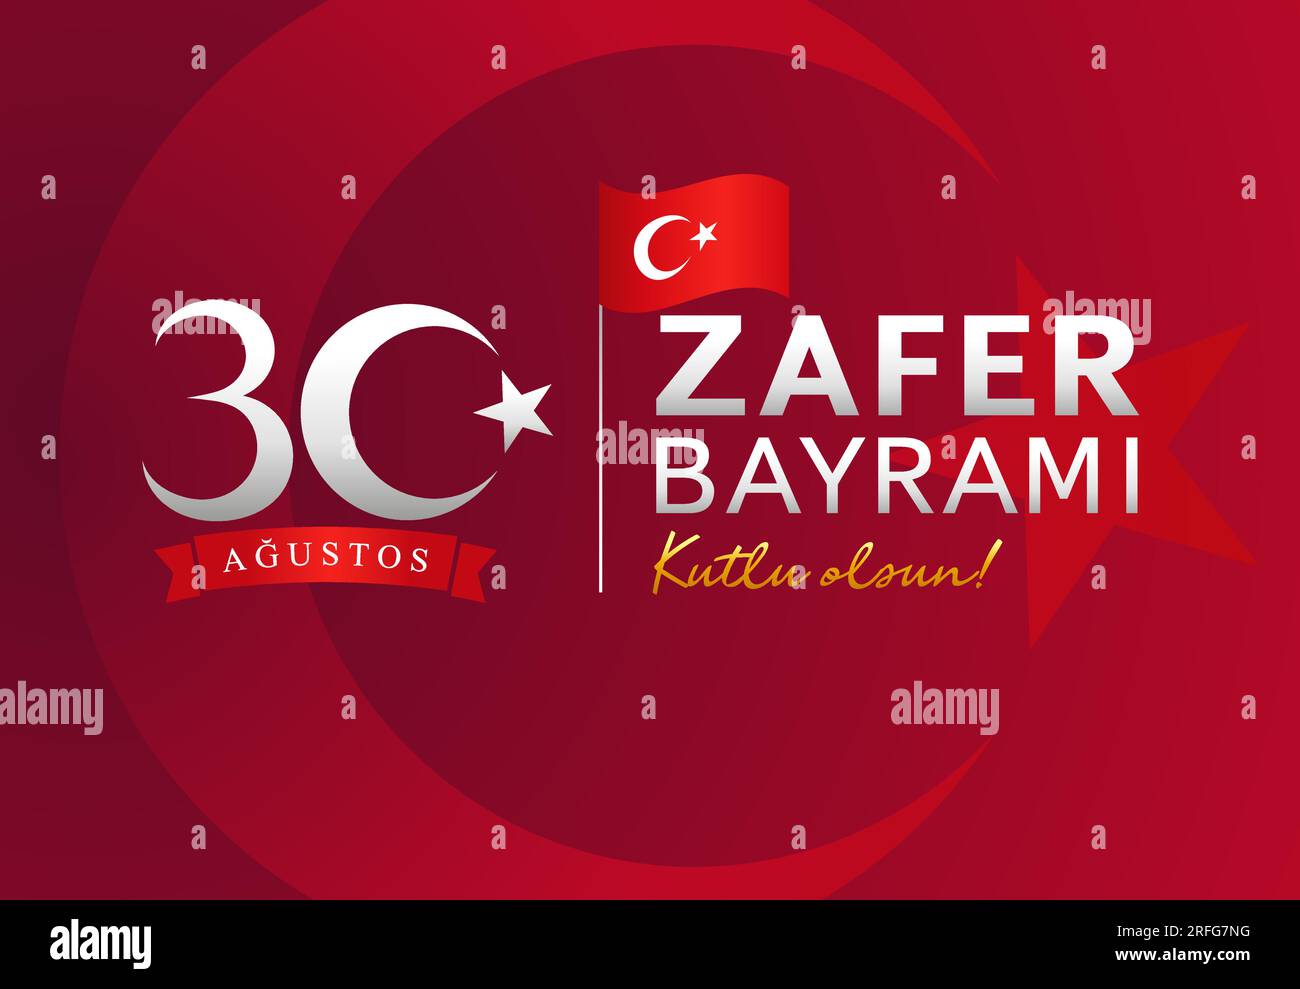 30 agosto zafer bayrami - giorno della Vittoria della Turchia. Traduzione - agosto 30 celebrazione della Vittoria. Design del poster. Illustrazione Vettoriale